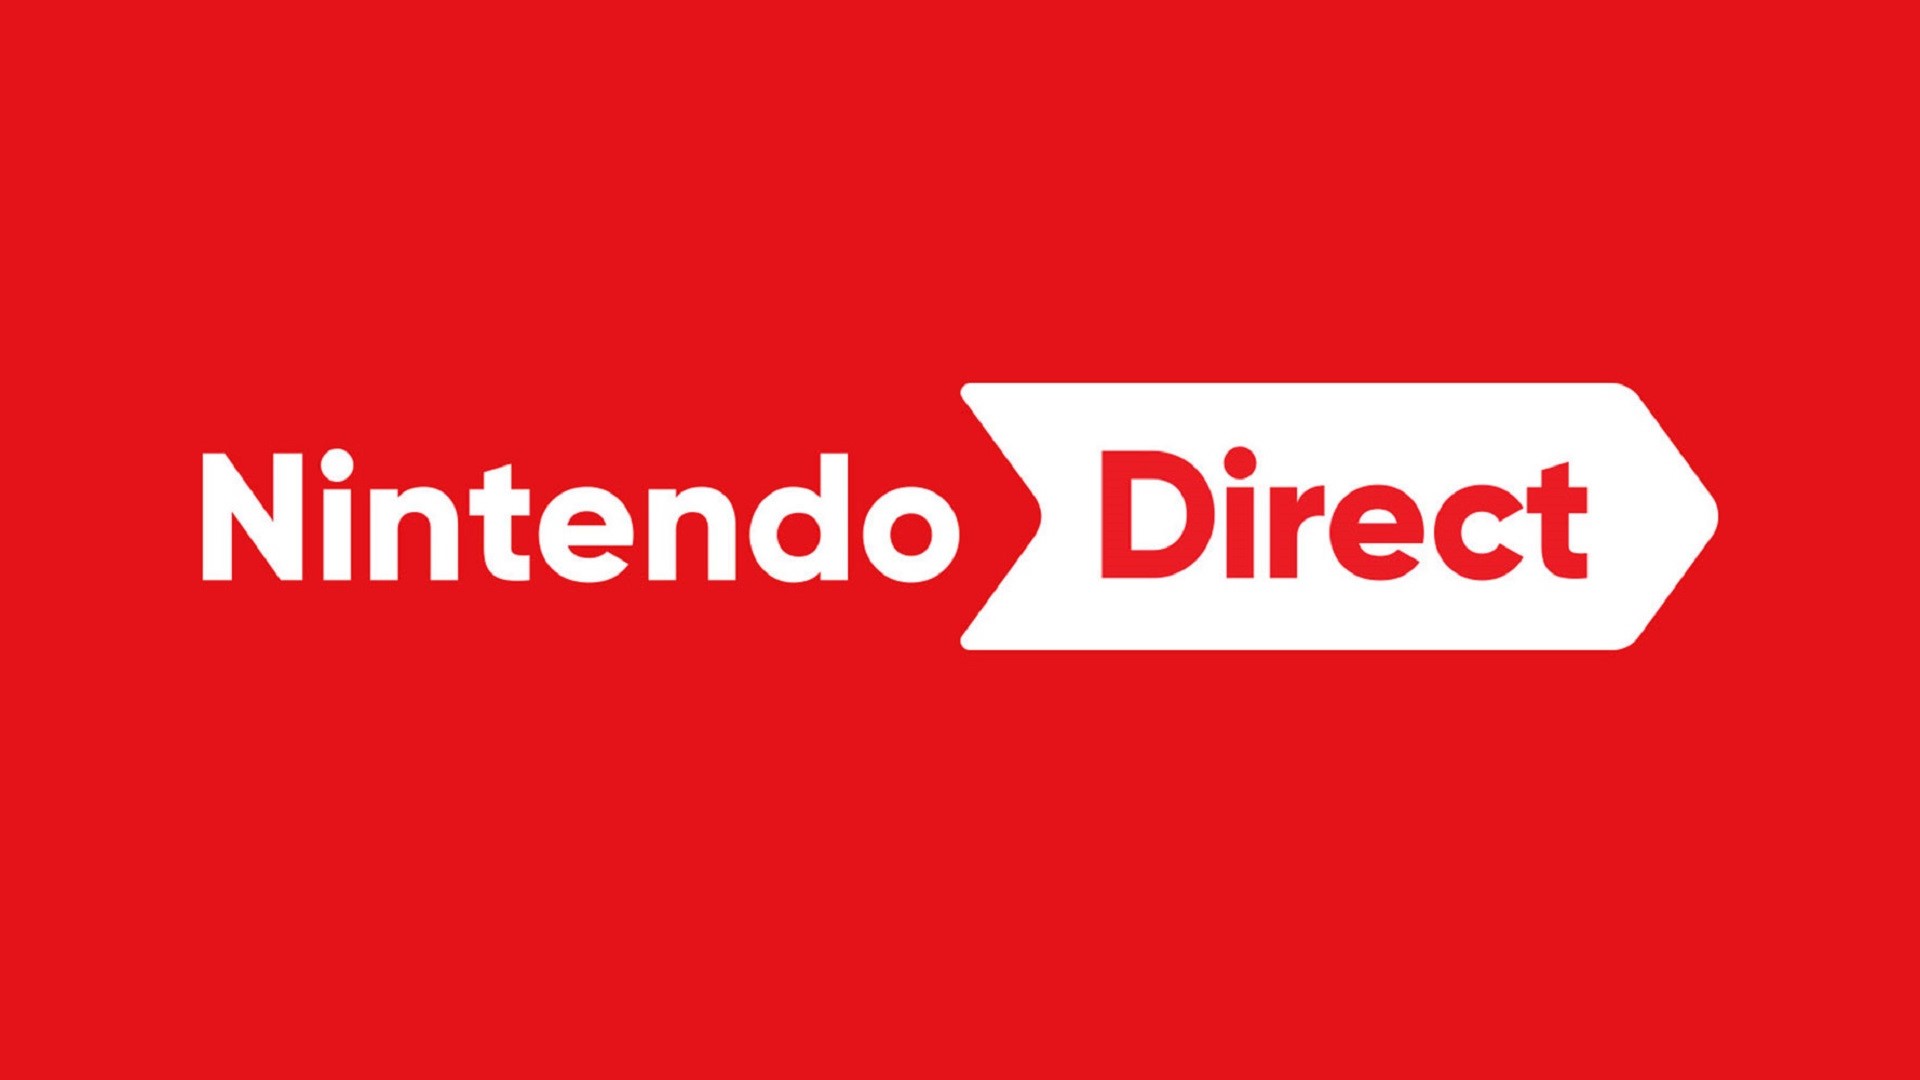 Nintendo Direct Announced for September 14th